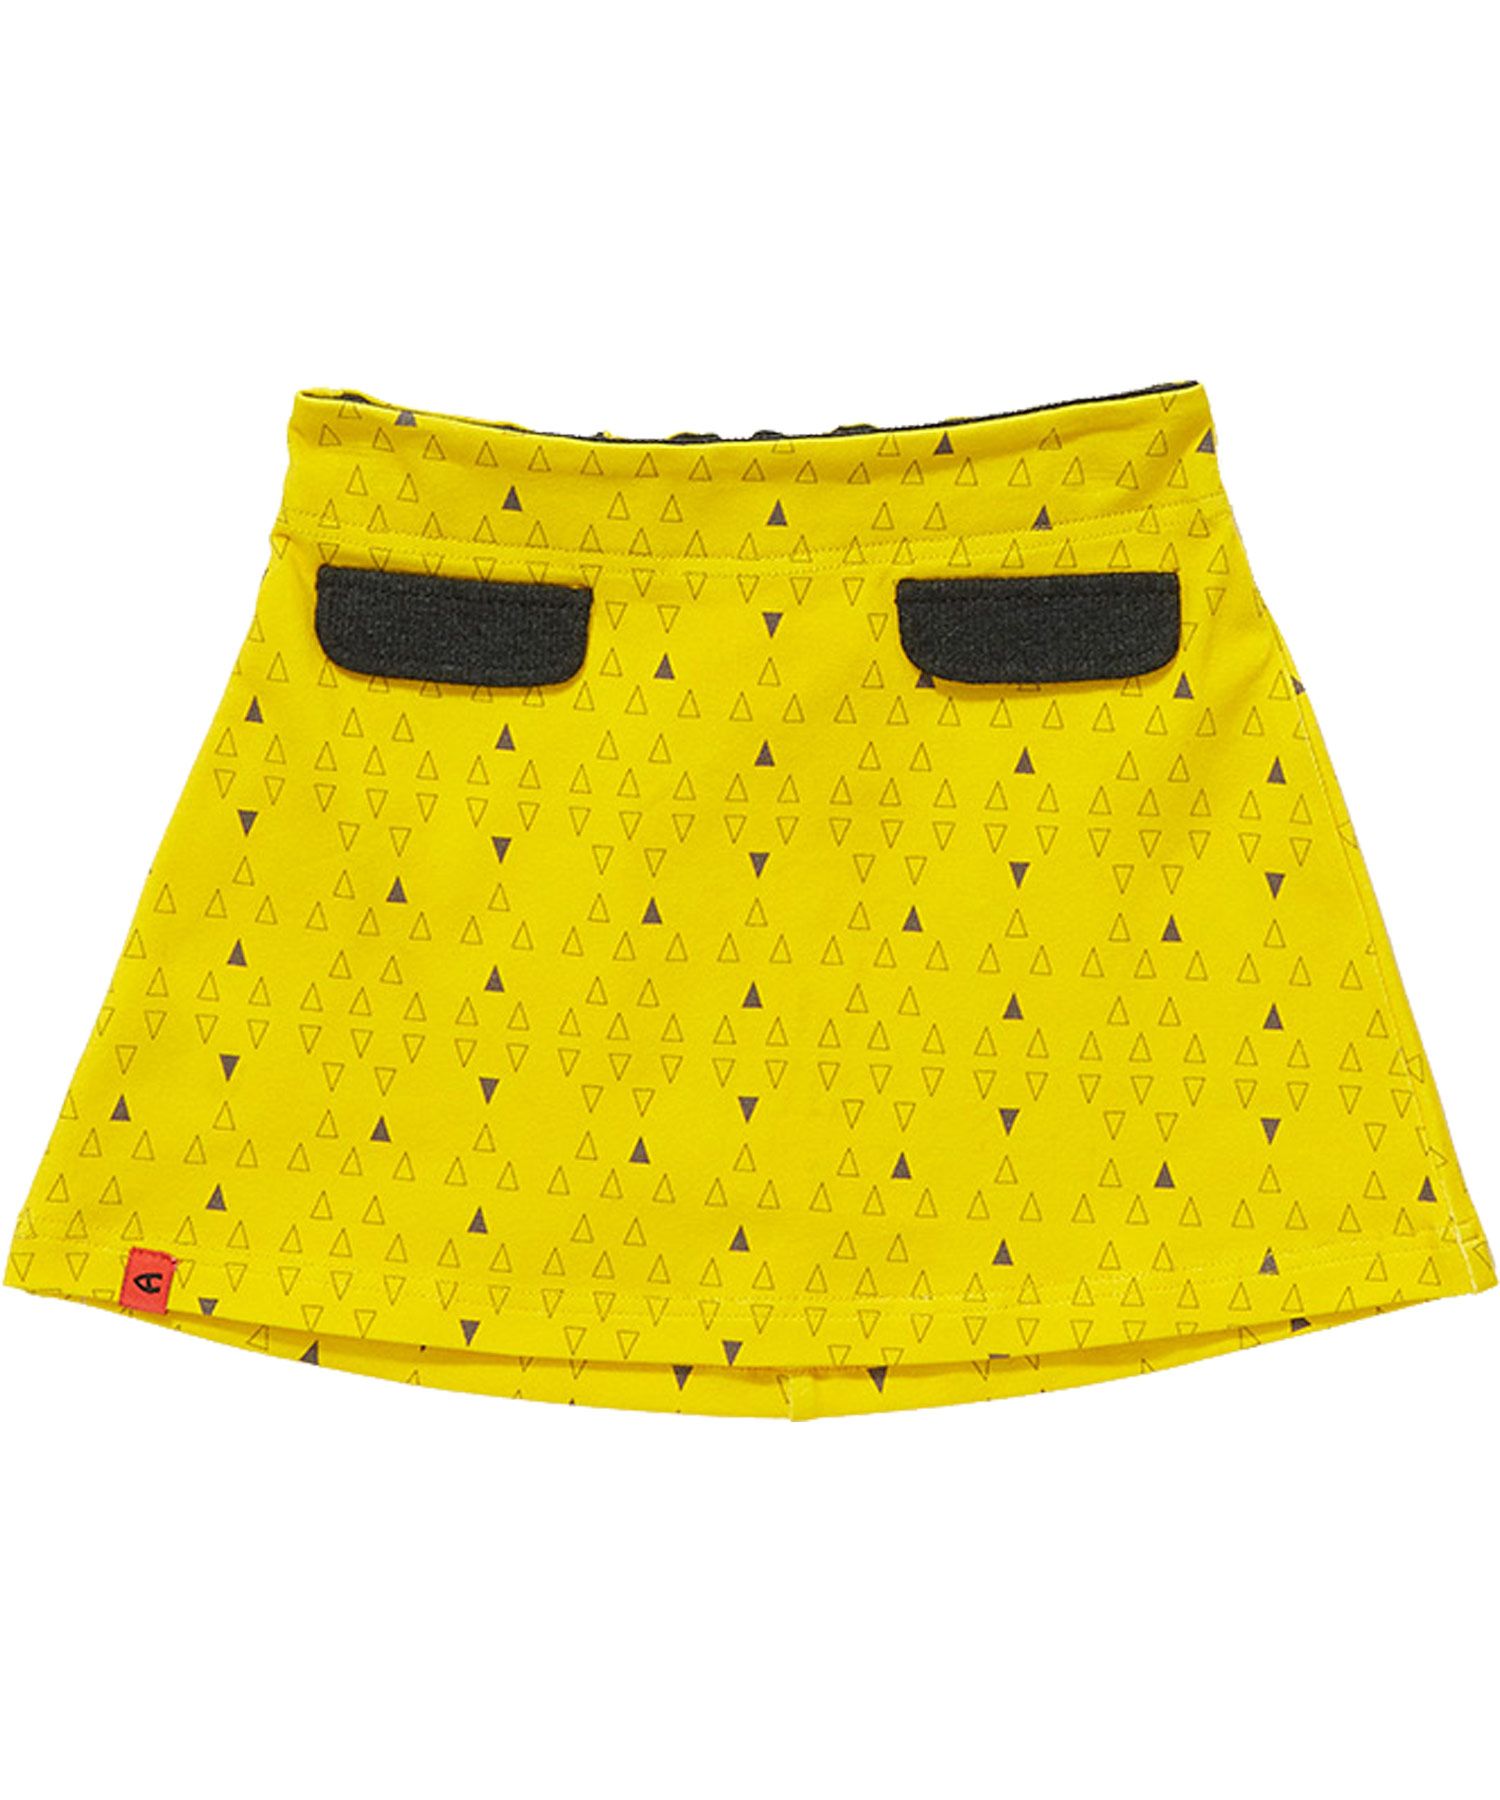 Alba of Denmark - Flow Skirt Yellow Triangles